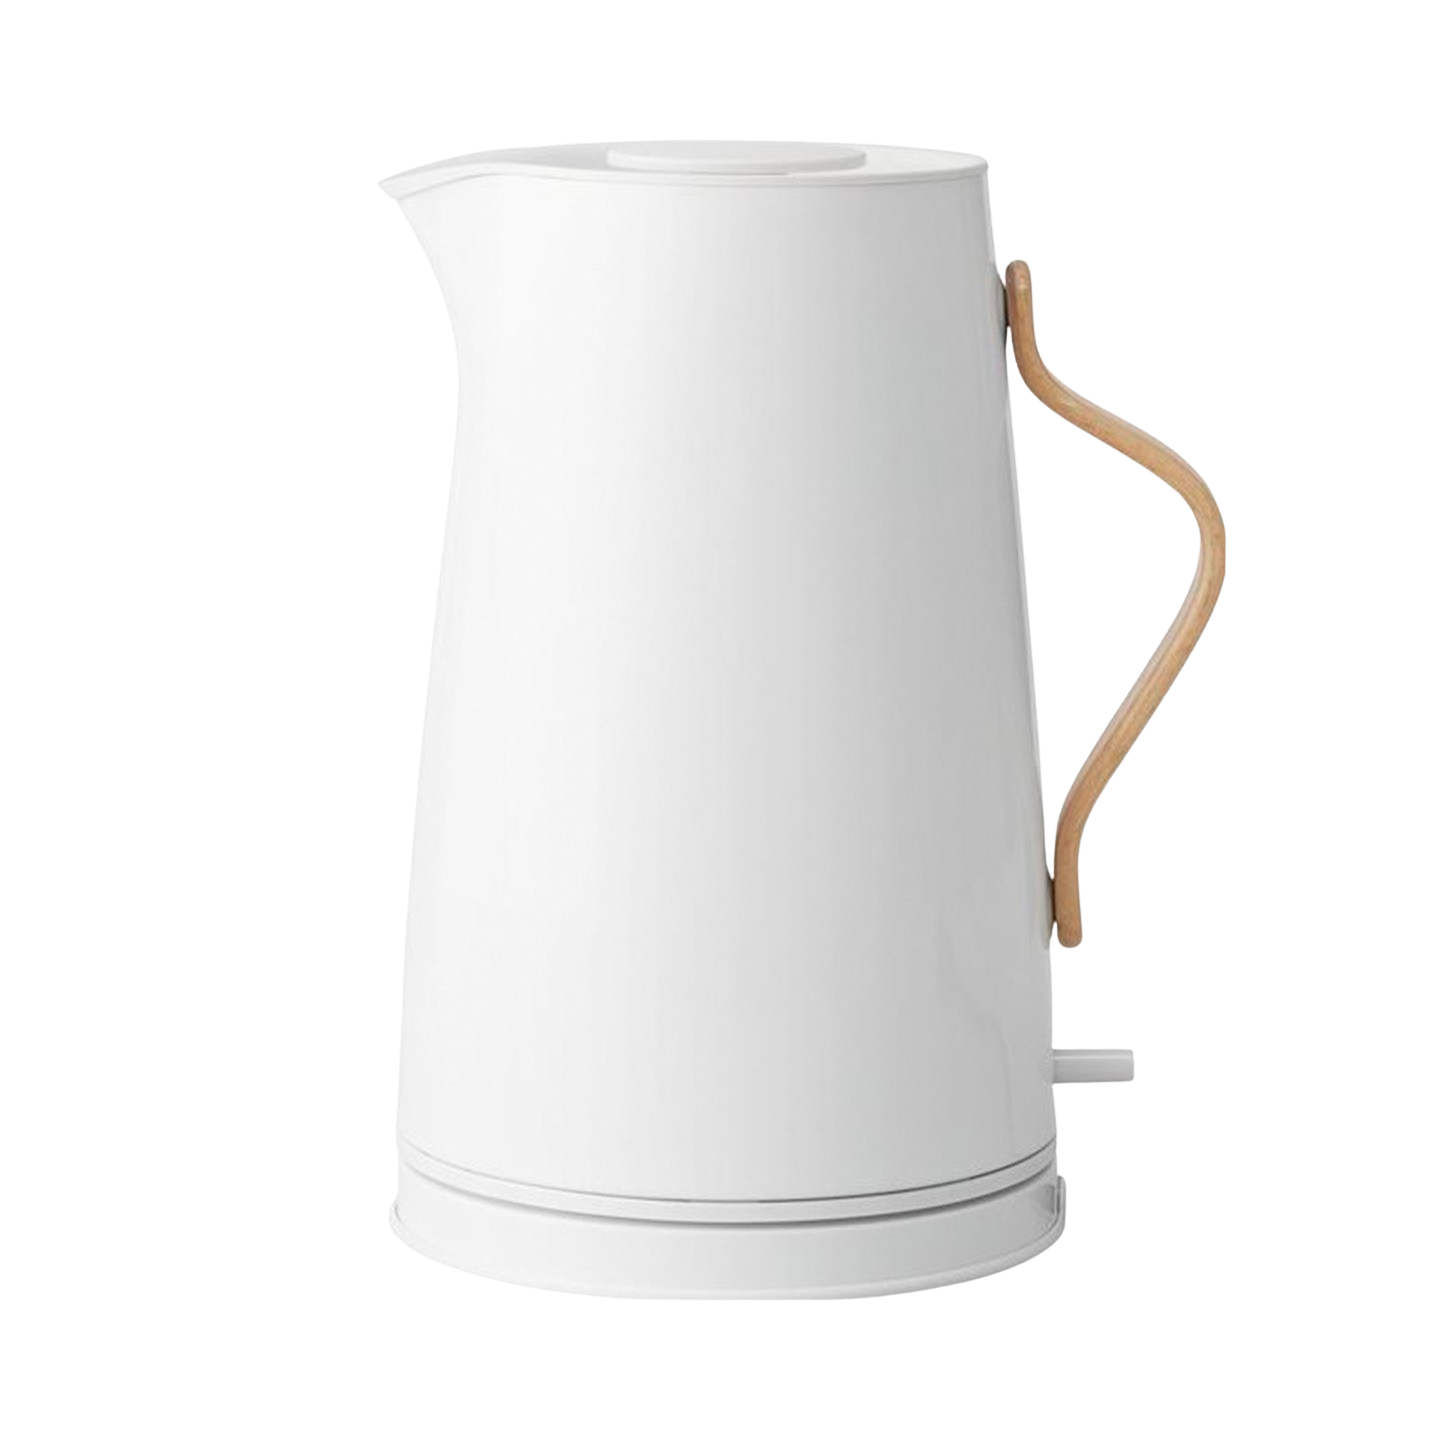 74052 Stelton EMMA Electric kettle